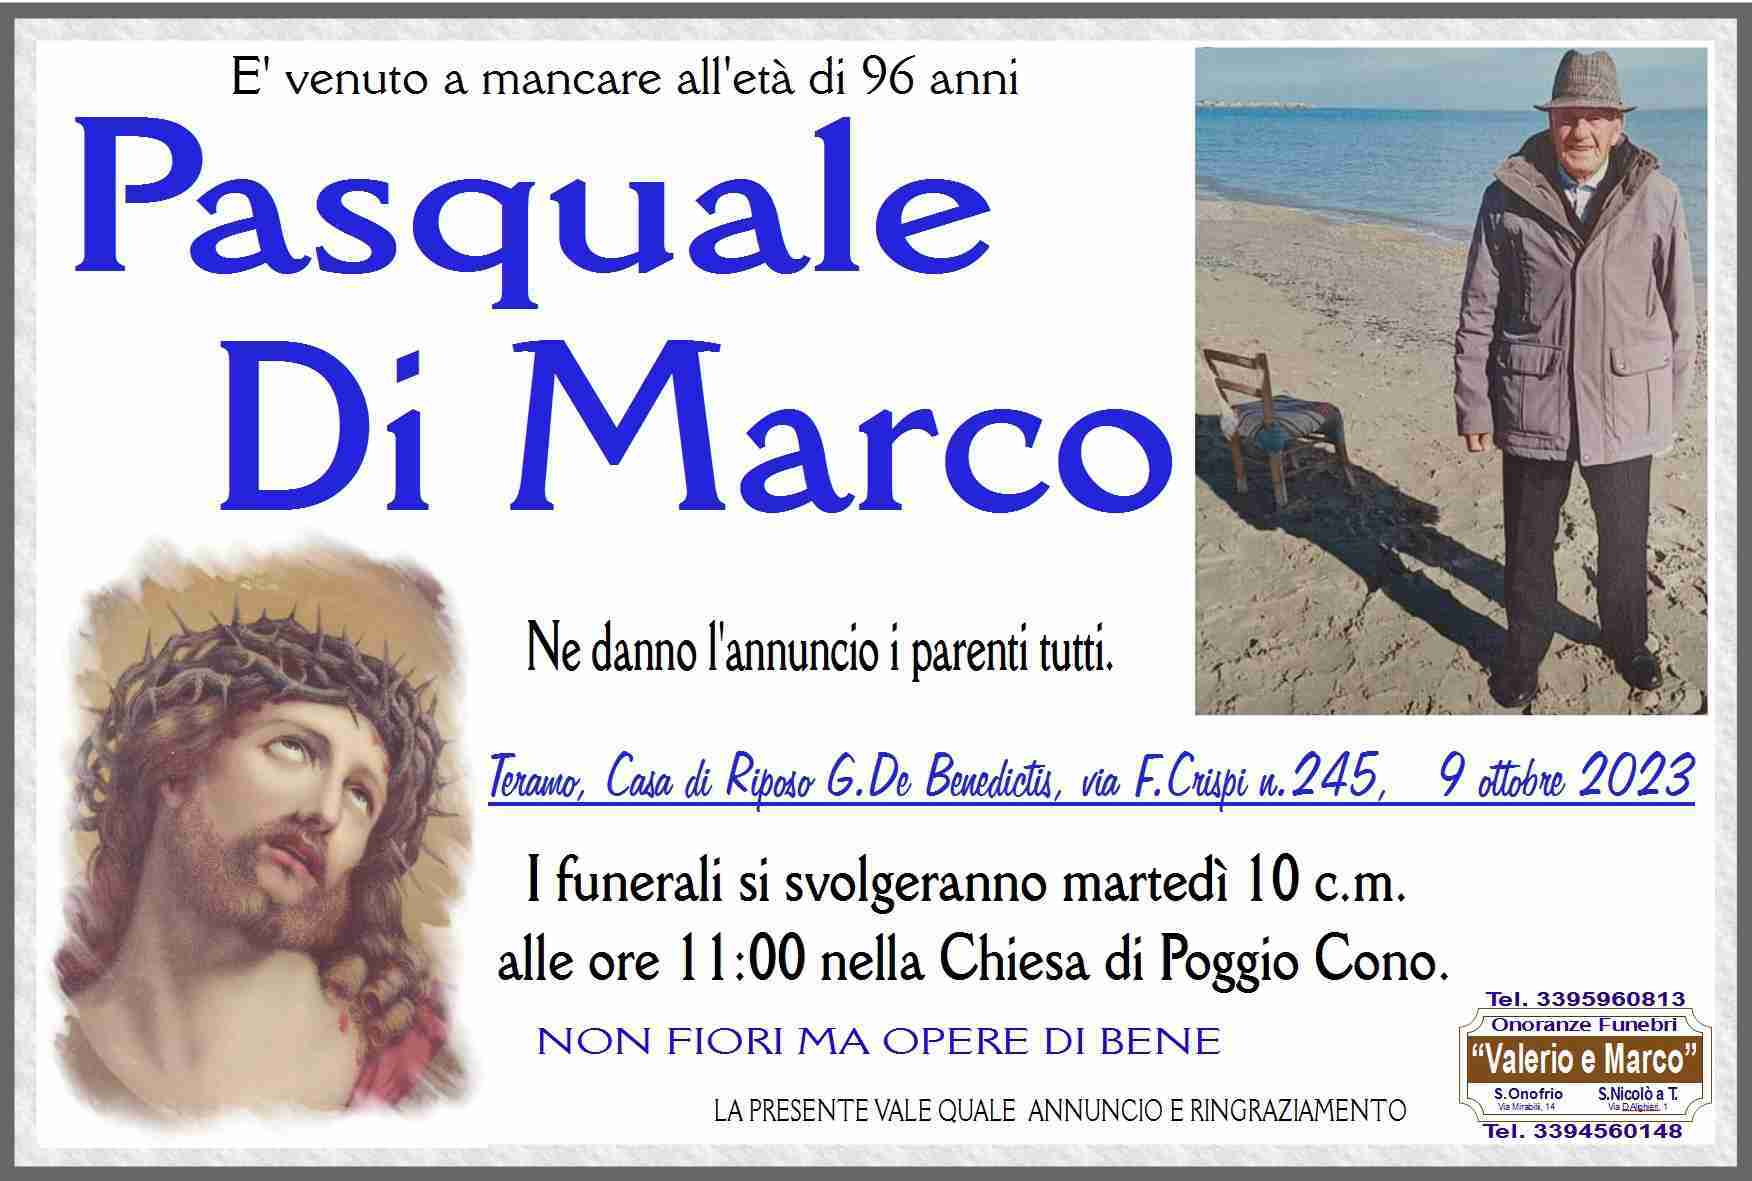 Pasquale Di Marco